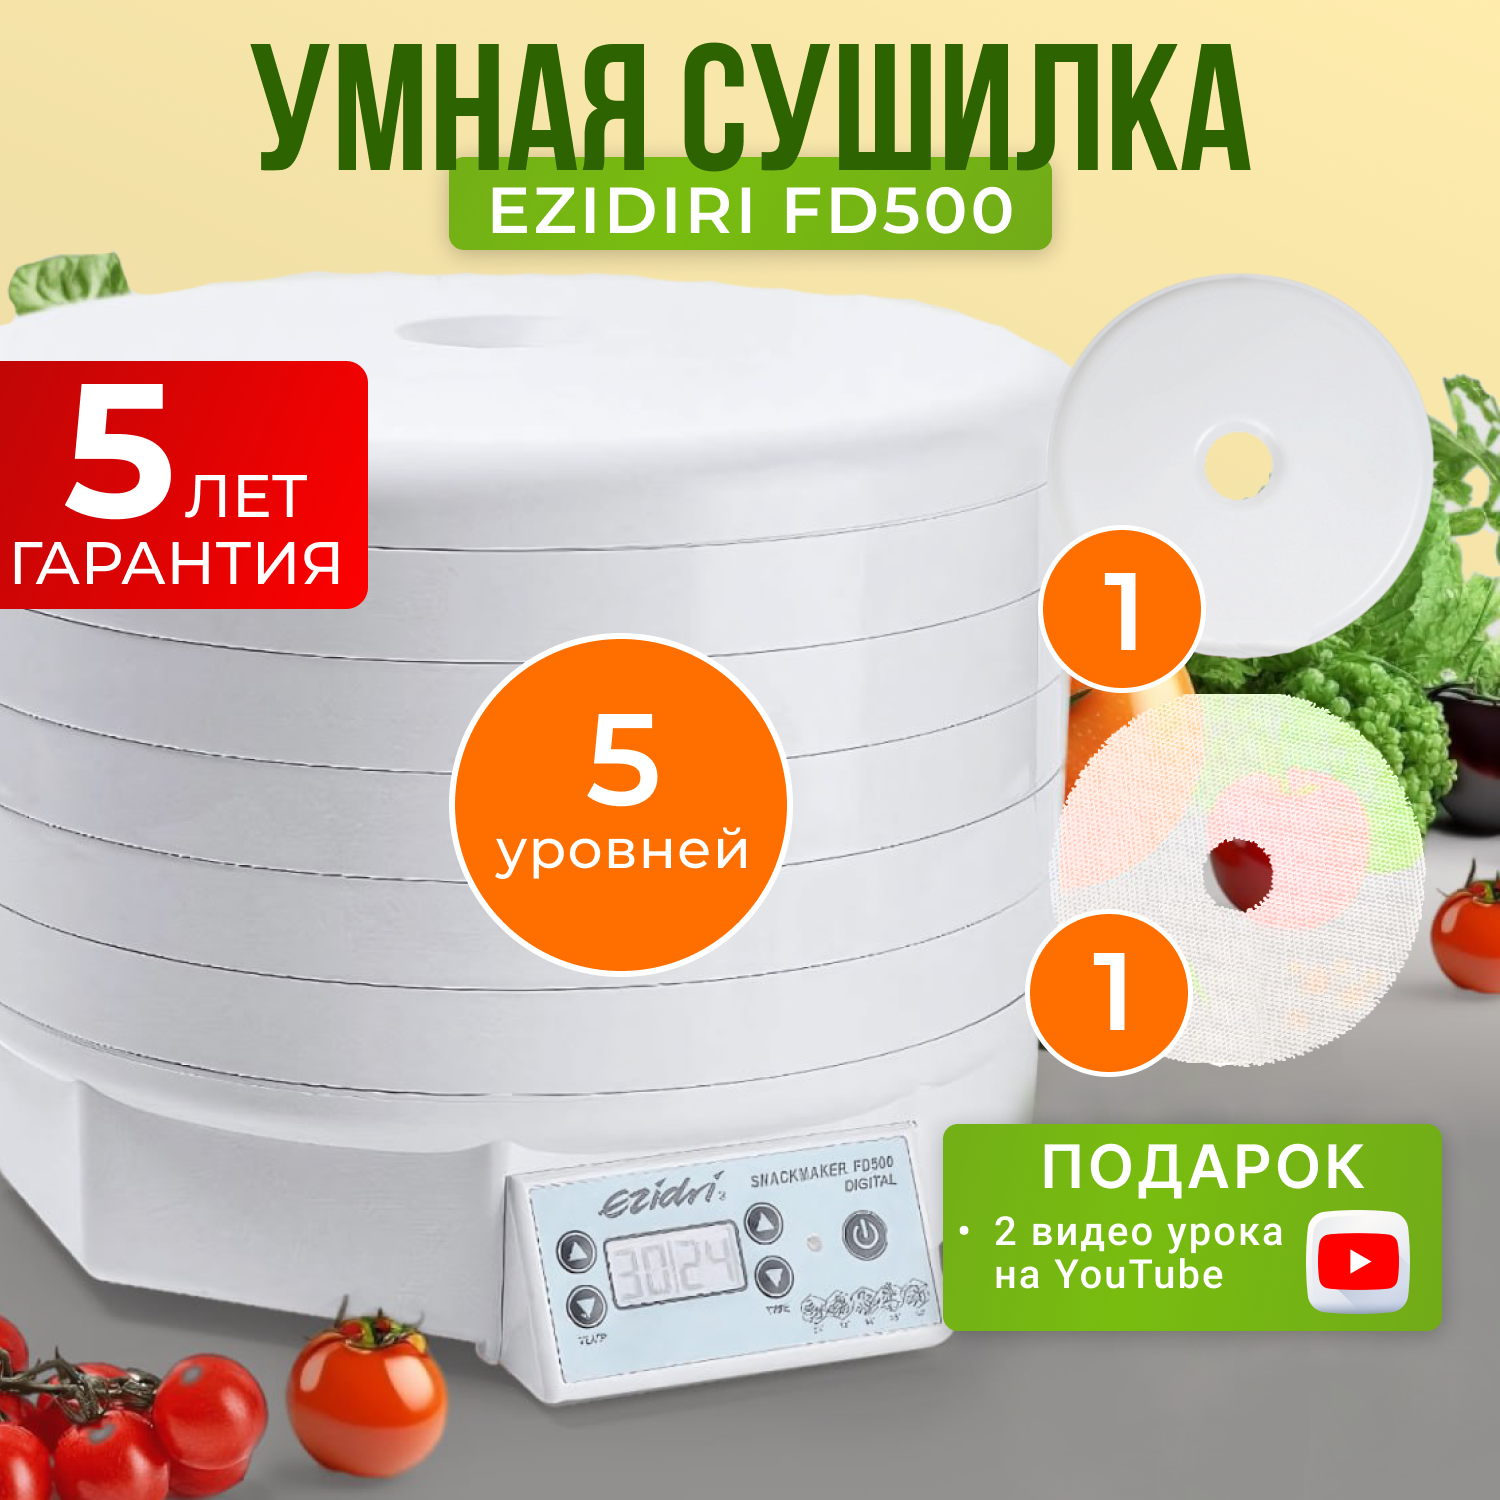 Сушилка для овощей и фруктов Ezidri snackmaker FD500 Digital сушилка для овощей и фруктов ezidri fd1000 digital белая 12 поддонов 16 листов